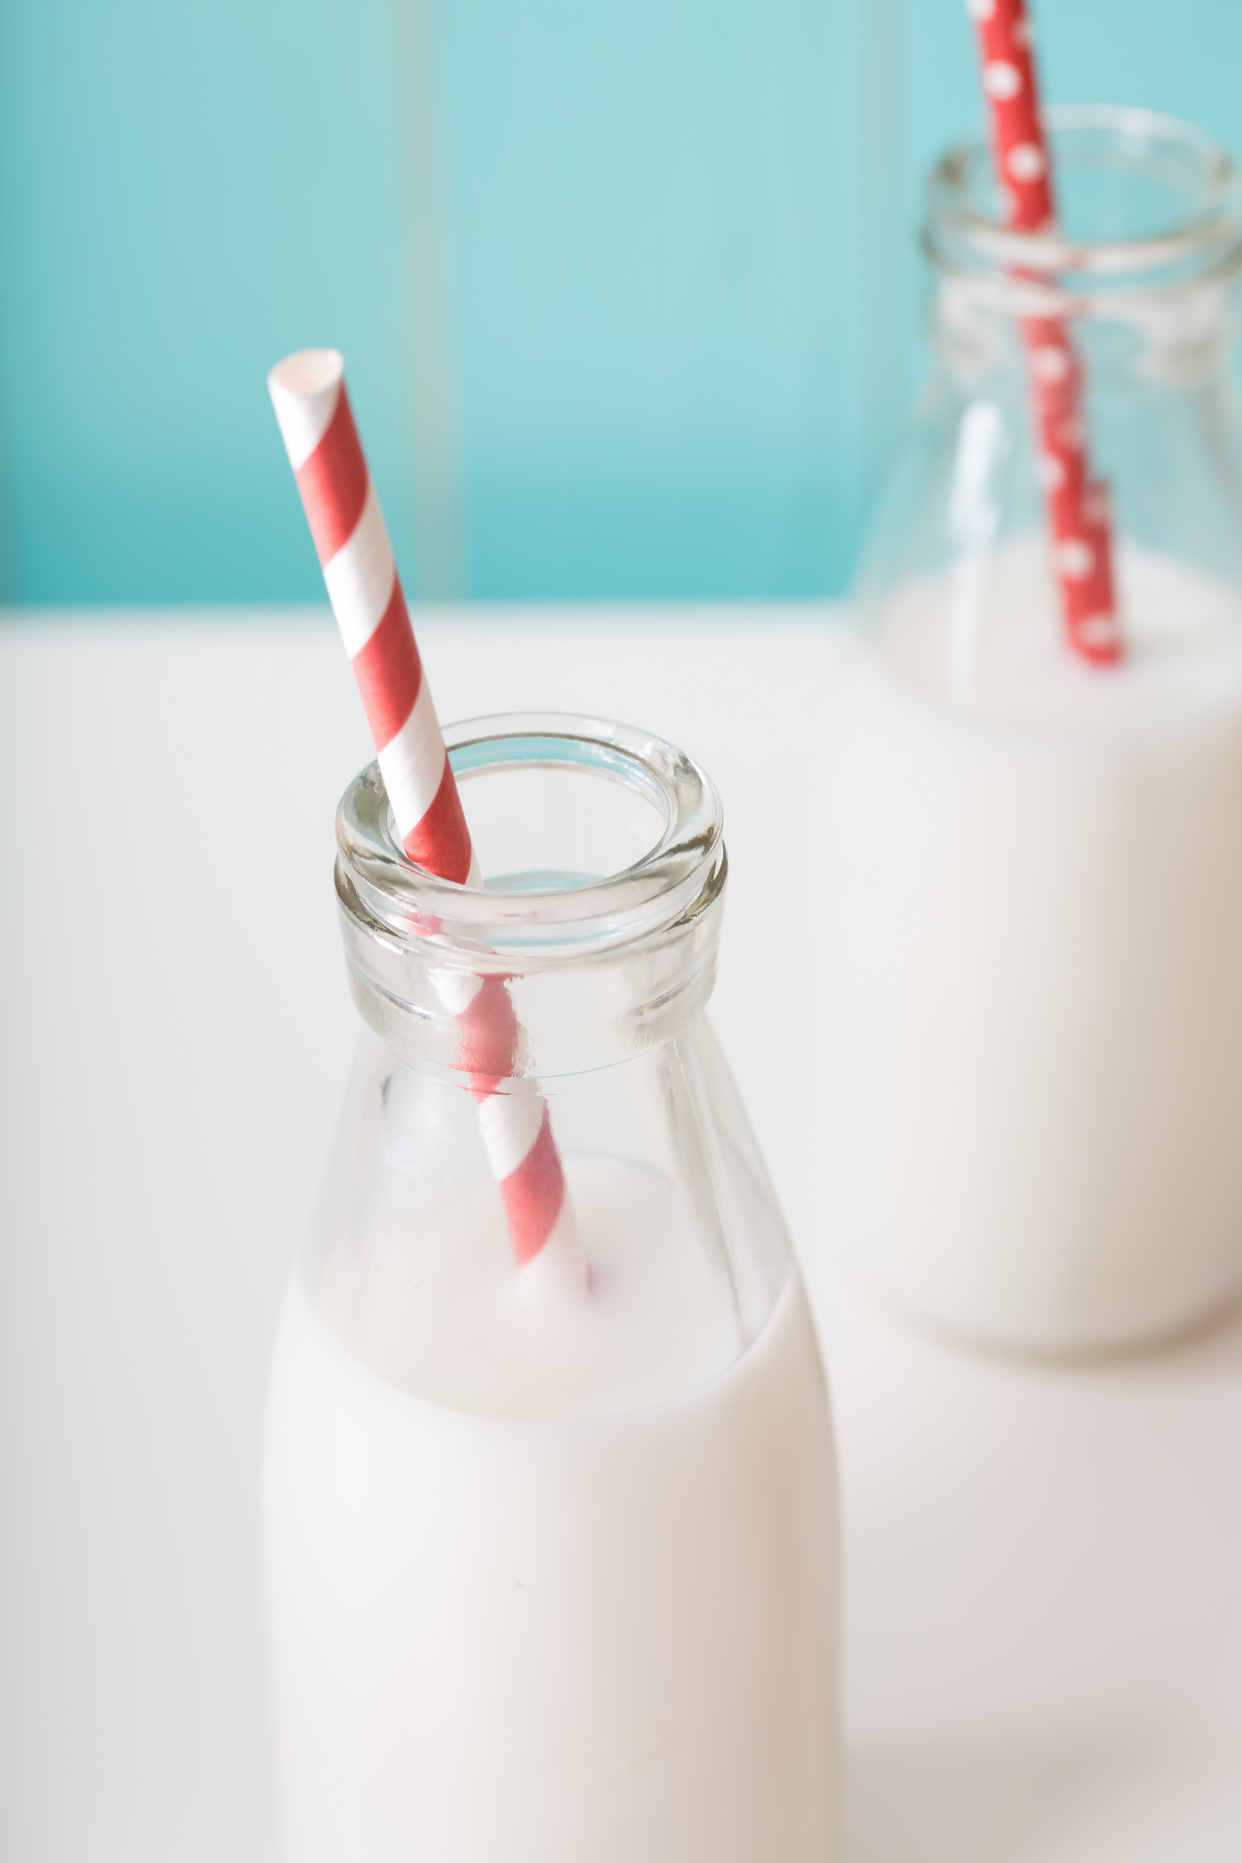 全脂乳、低脂乳、脱脂乳，到底哪种奶对孩子更健康呢？